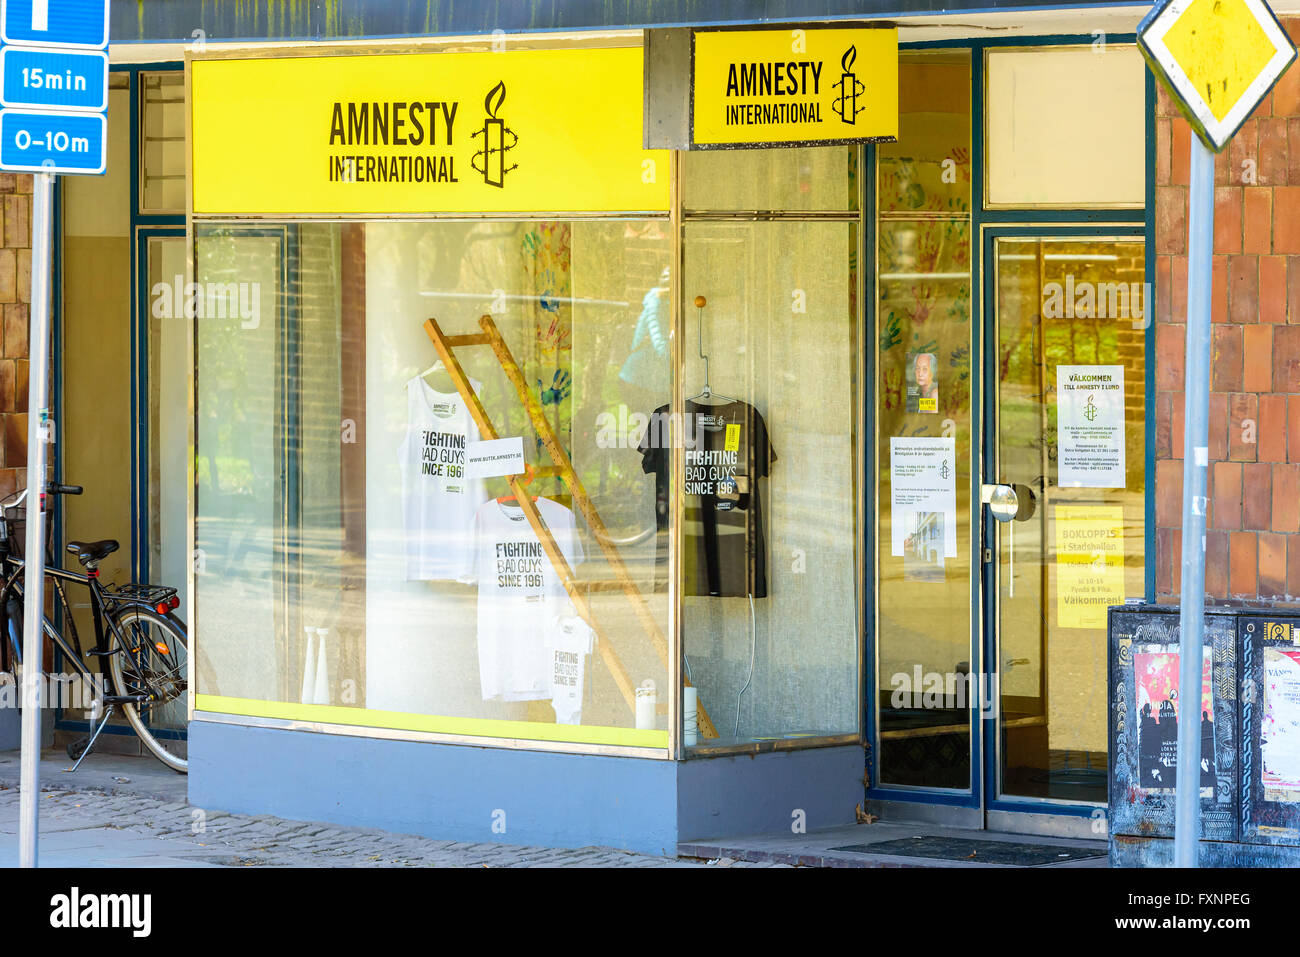 Lund, Svezia - 11 Aprile 2016: Amnesty International shop nella città. T-shirt in vetrina e massaggi sul negozio porta. Foto Stock